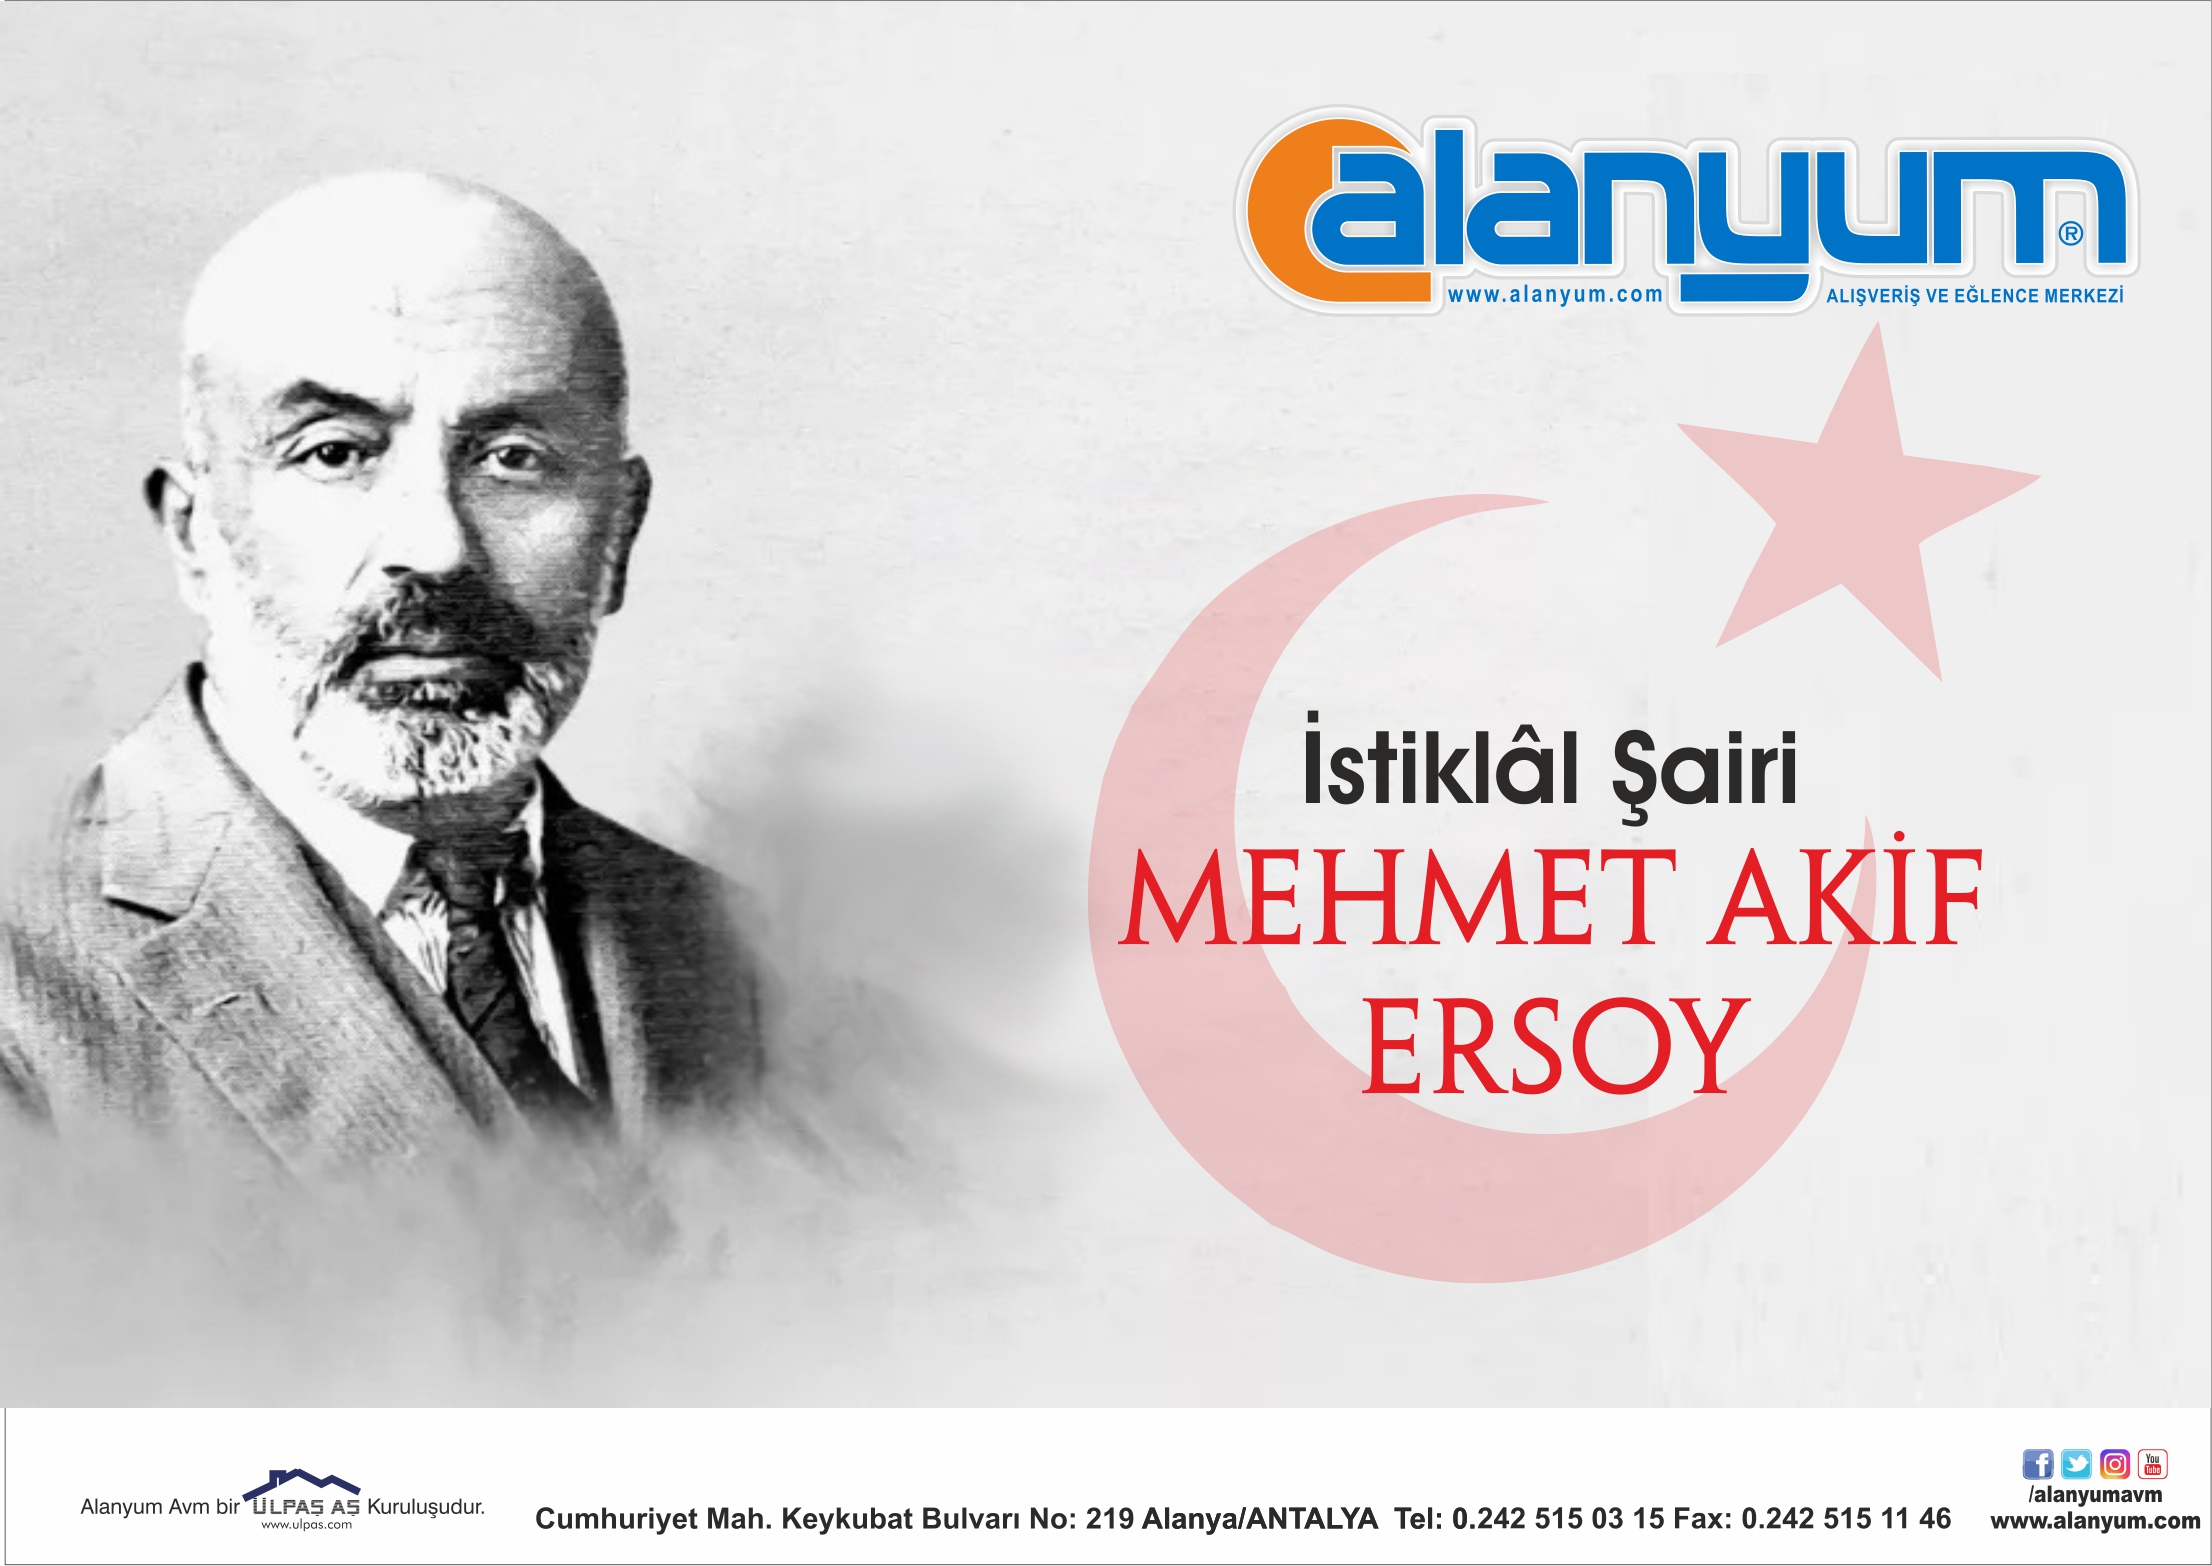 "İstiklâl Şairimiz" Mehmet Akif Ersoy'u rahmet, minnet ve şükranla anıyoruz.